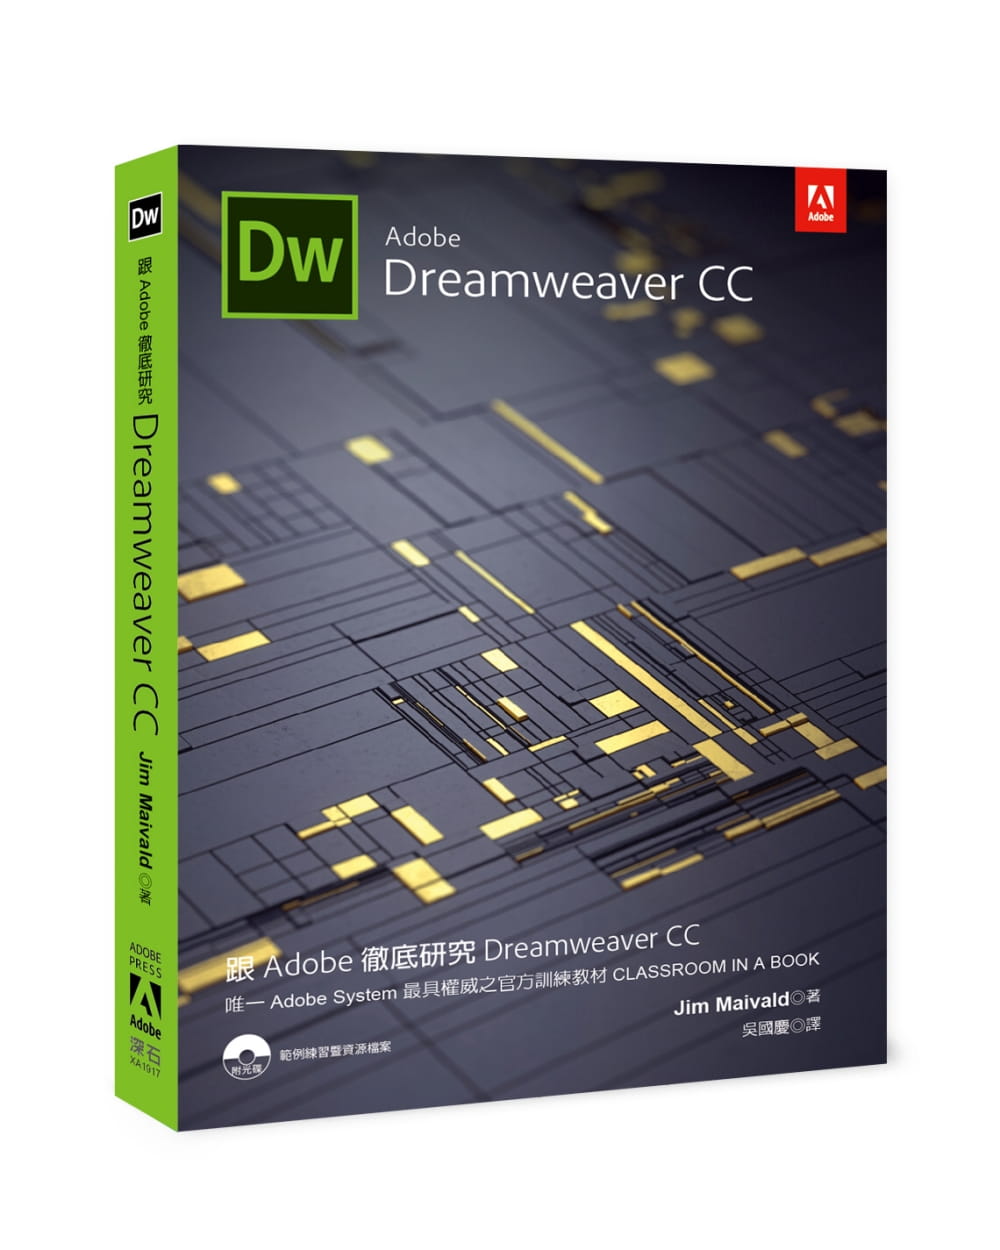 跟Adobe徹底研究Dreamweaver